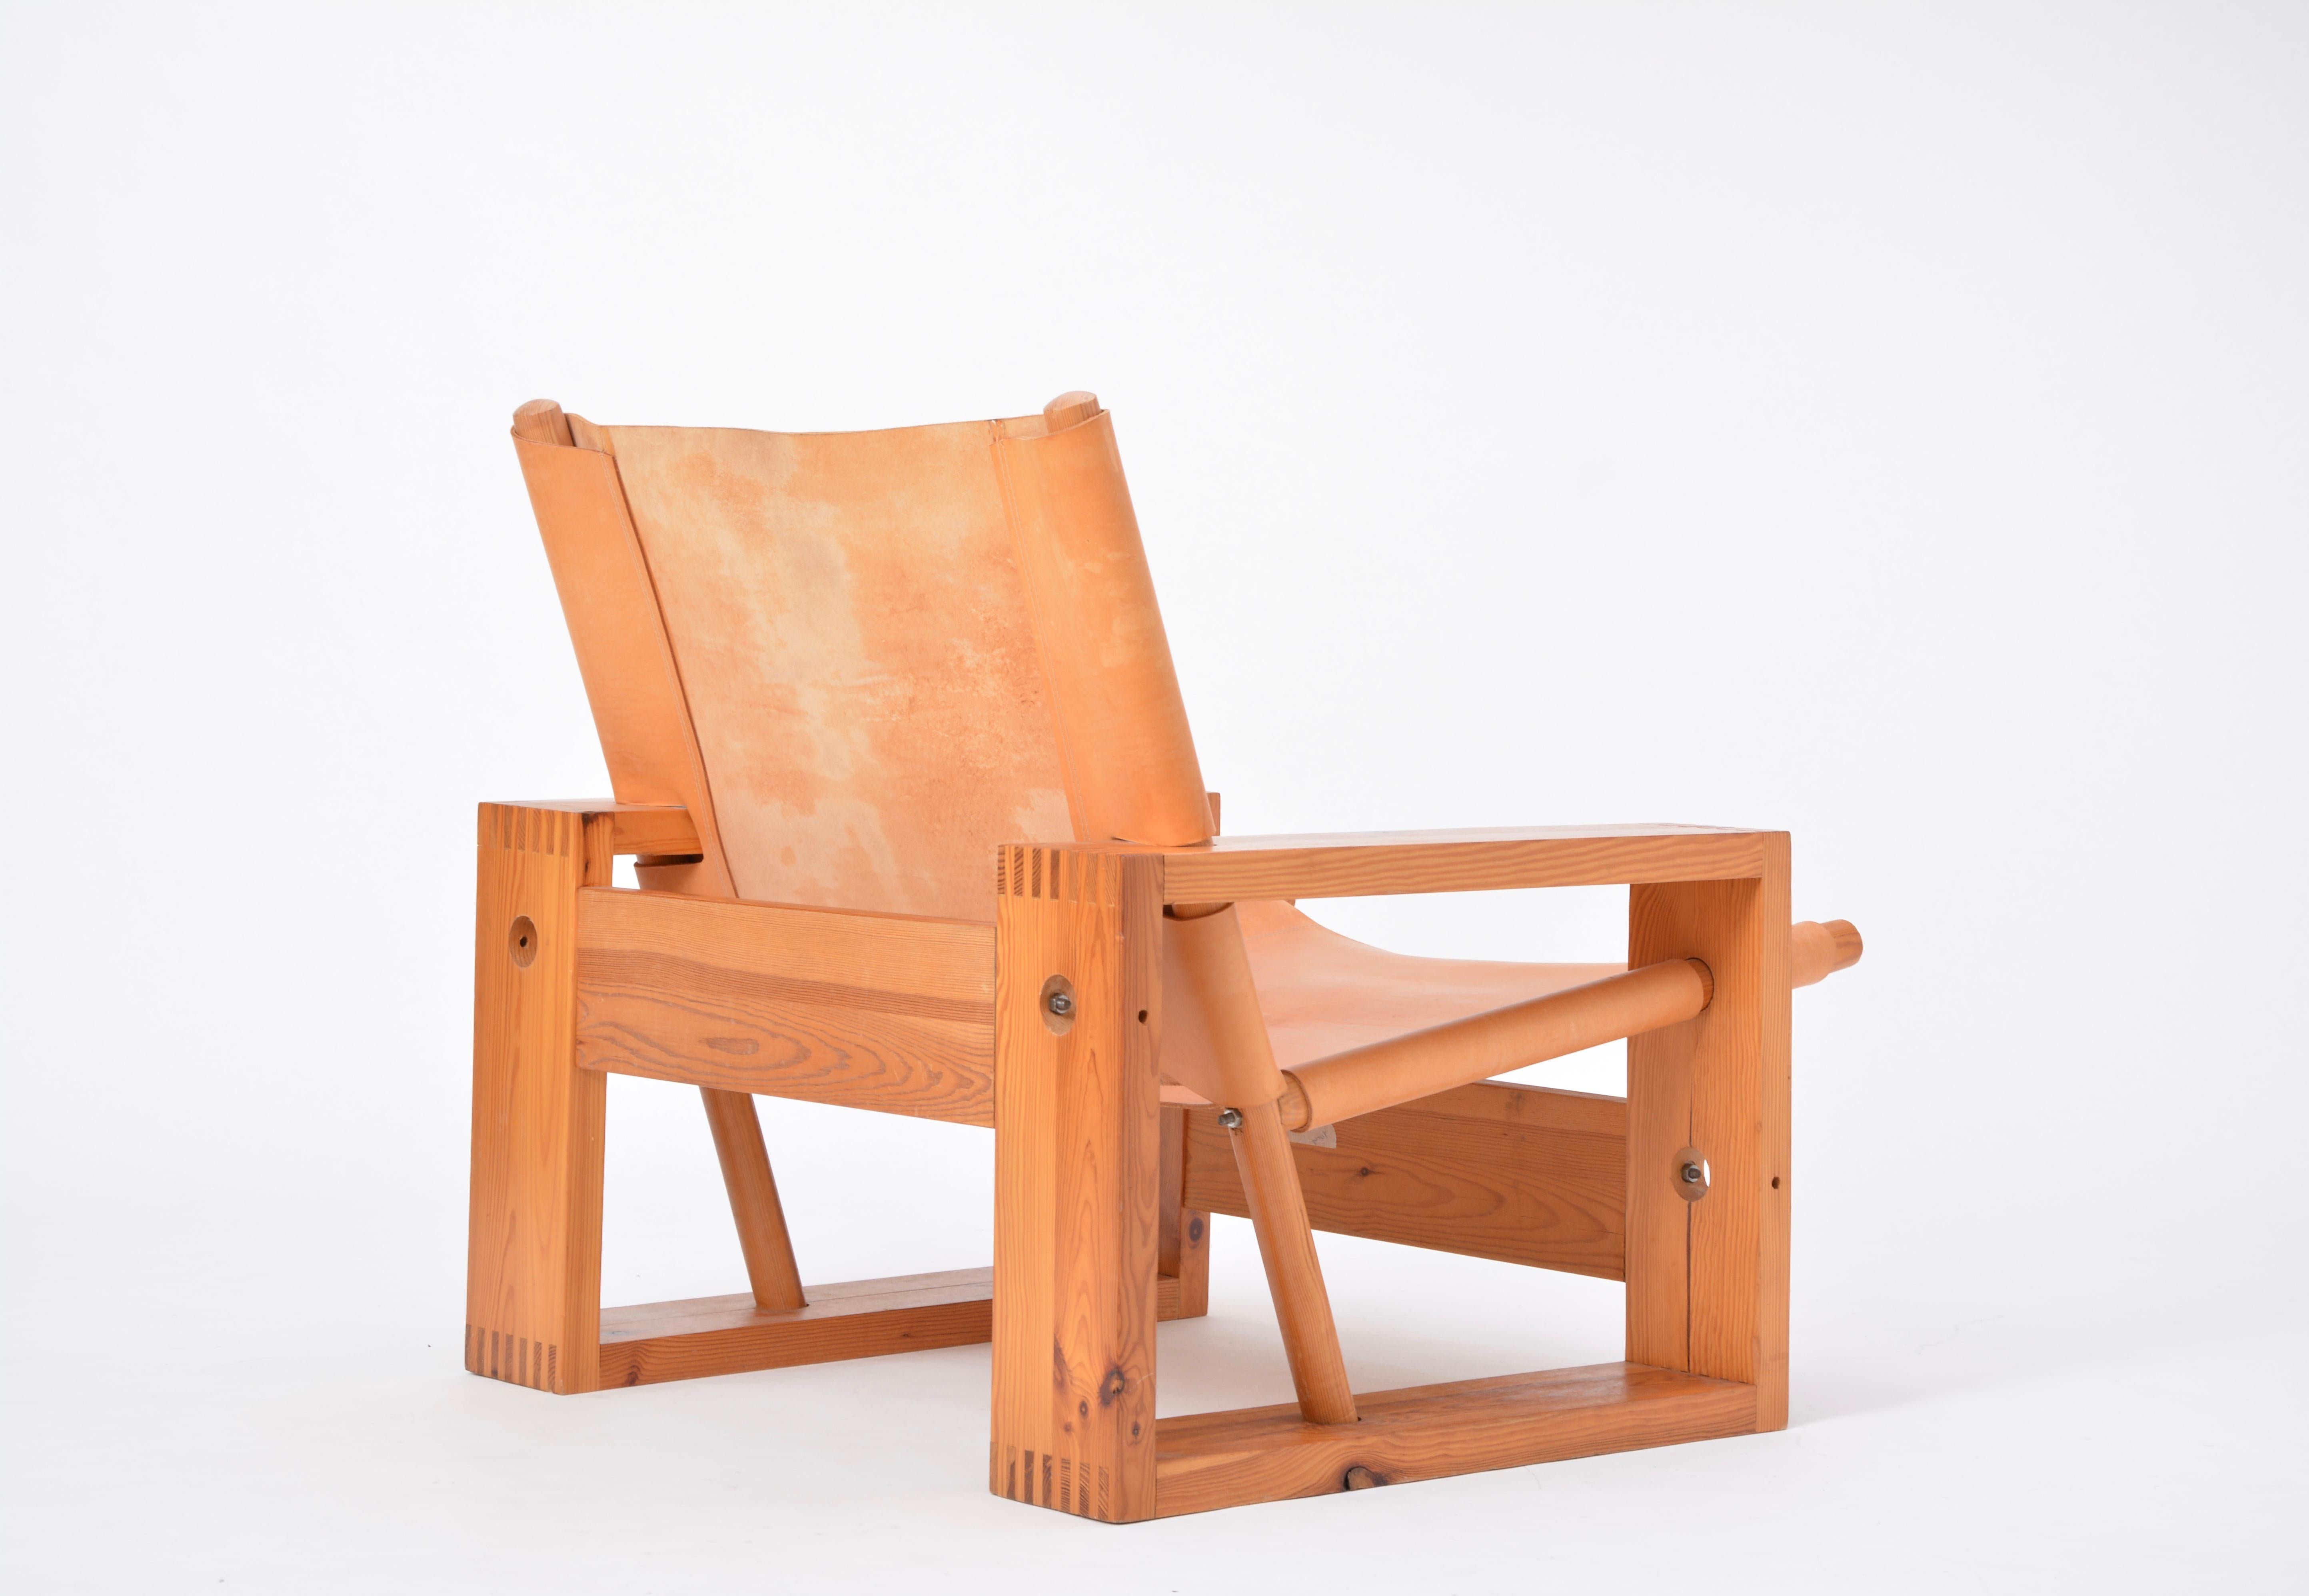 Dutch Mid-Century Modern Easy Chair designed by Ate Van Apeldoorn (Leder)